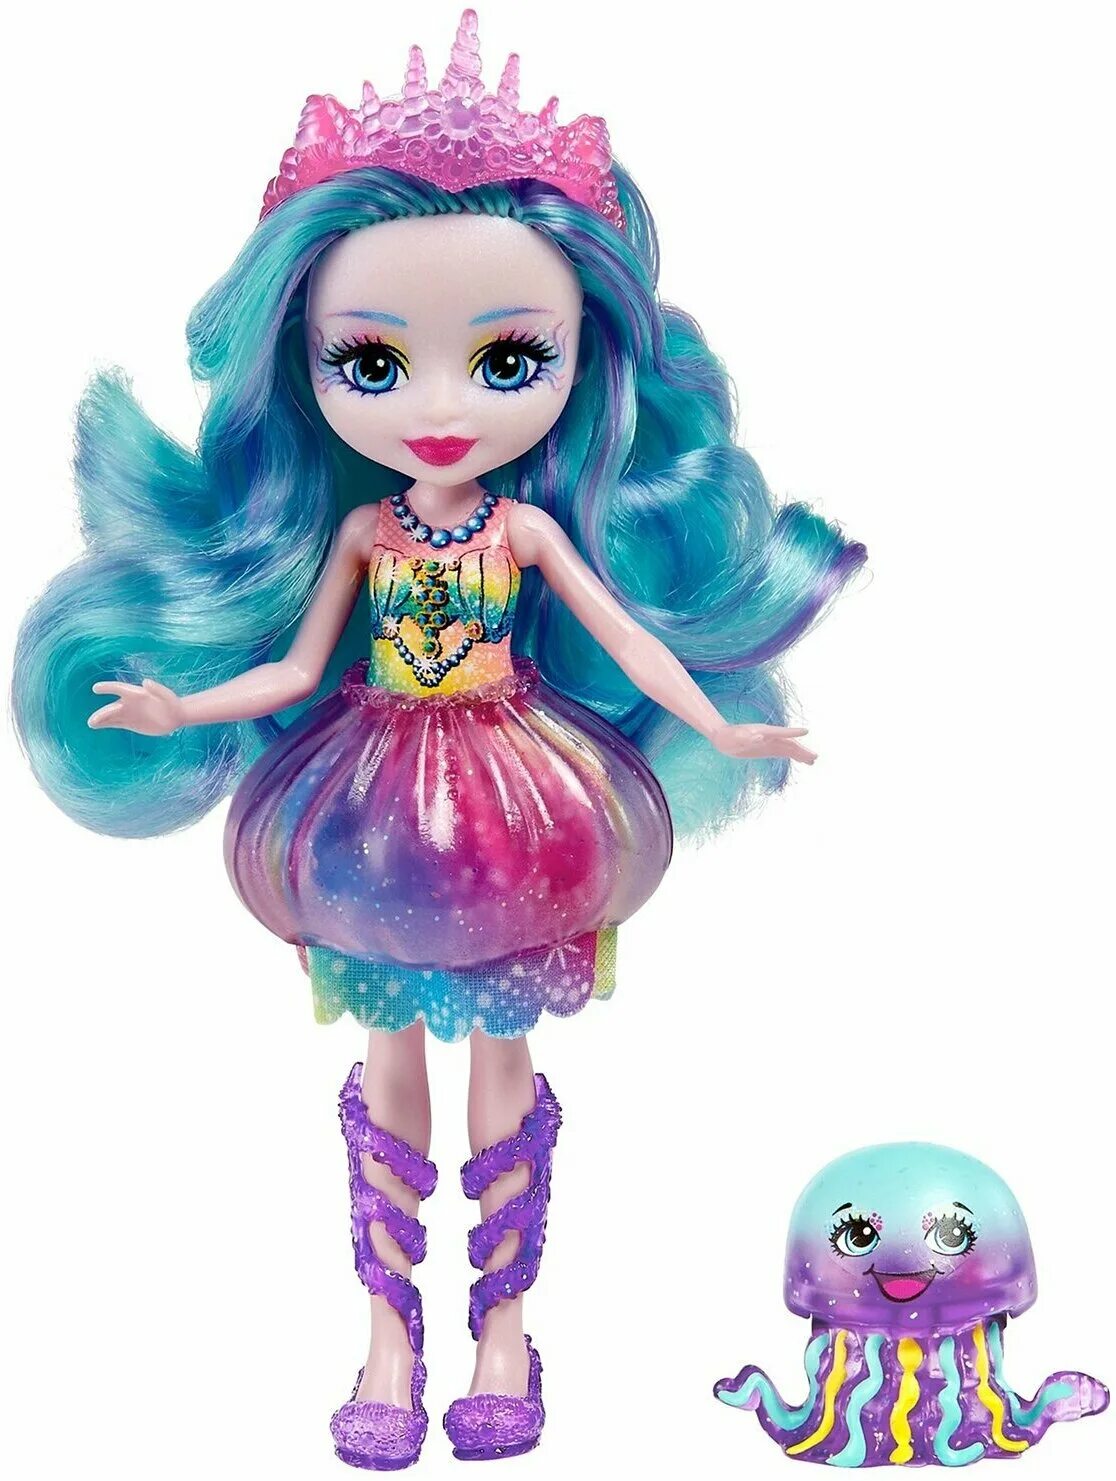 Кукла Enchantimals медуза. Enchantimals Royals Ocean Kingdom куклы. Энчантималс куклы медуза. Кукла Enchantimals с питомцем fnh22.